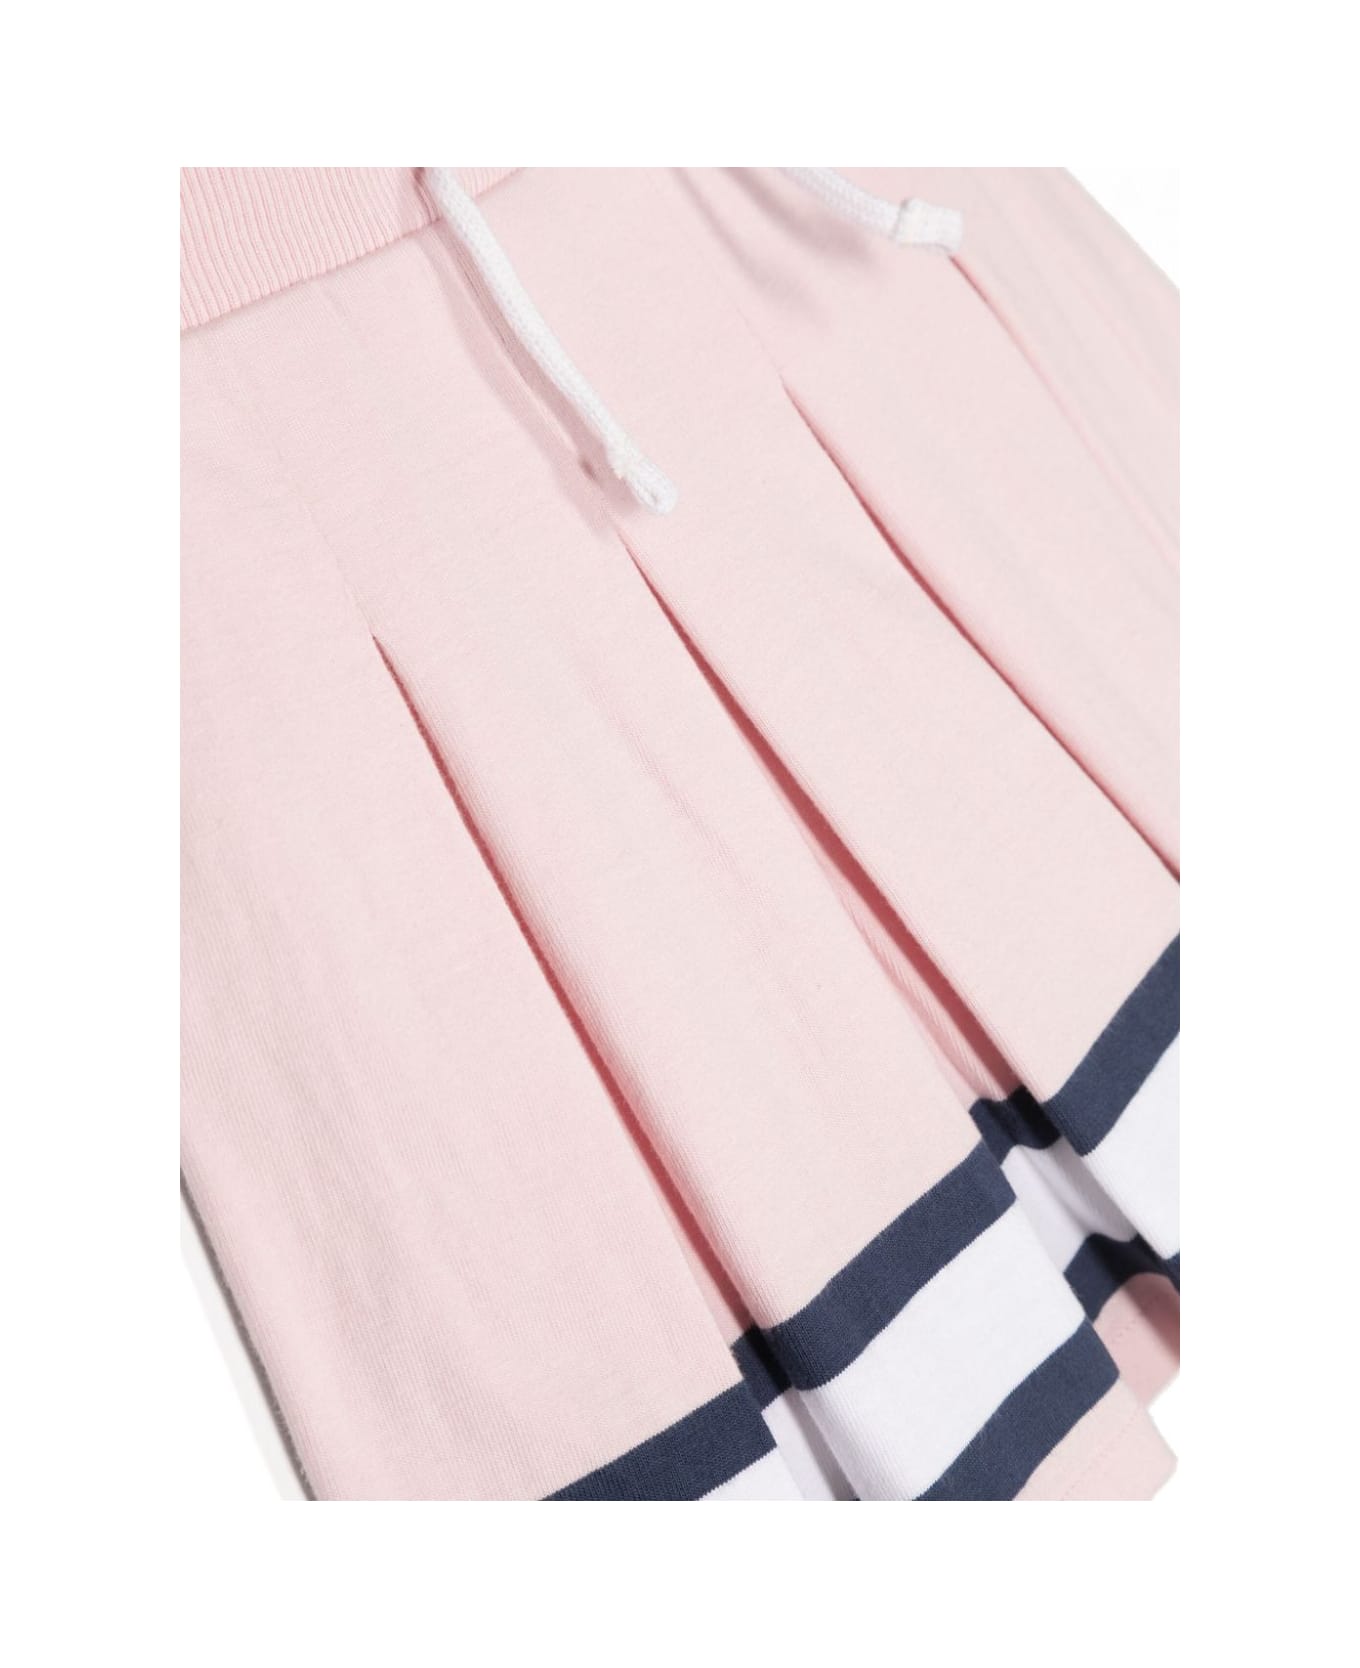 Polo Ralph Lauren Pleatskirt Skirt Full - Hint Of Pink Multi ボトムス